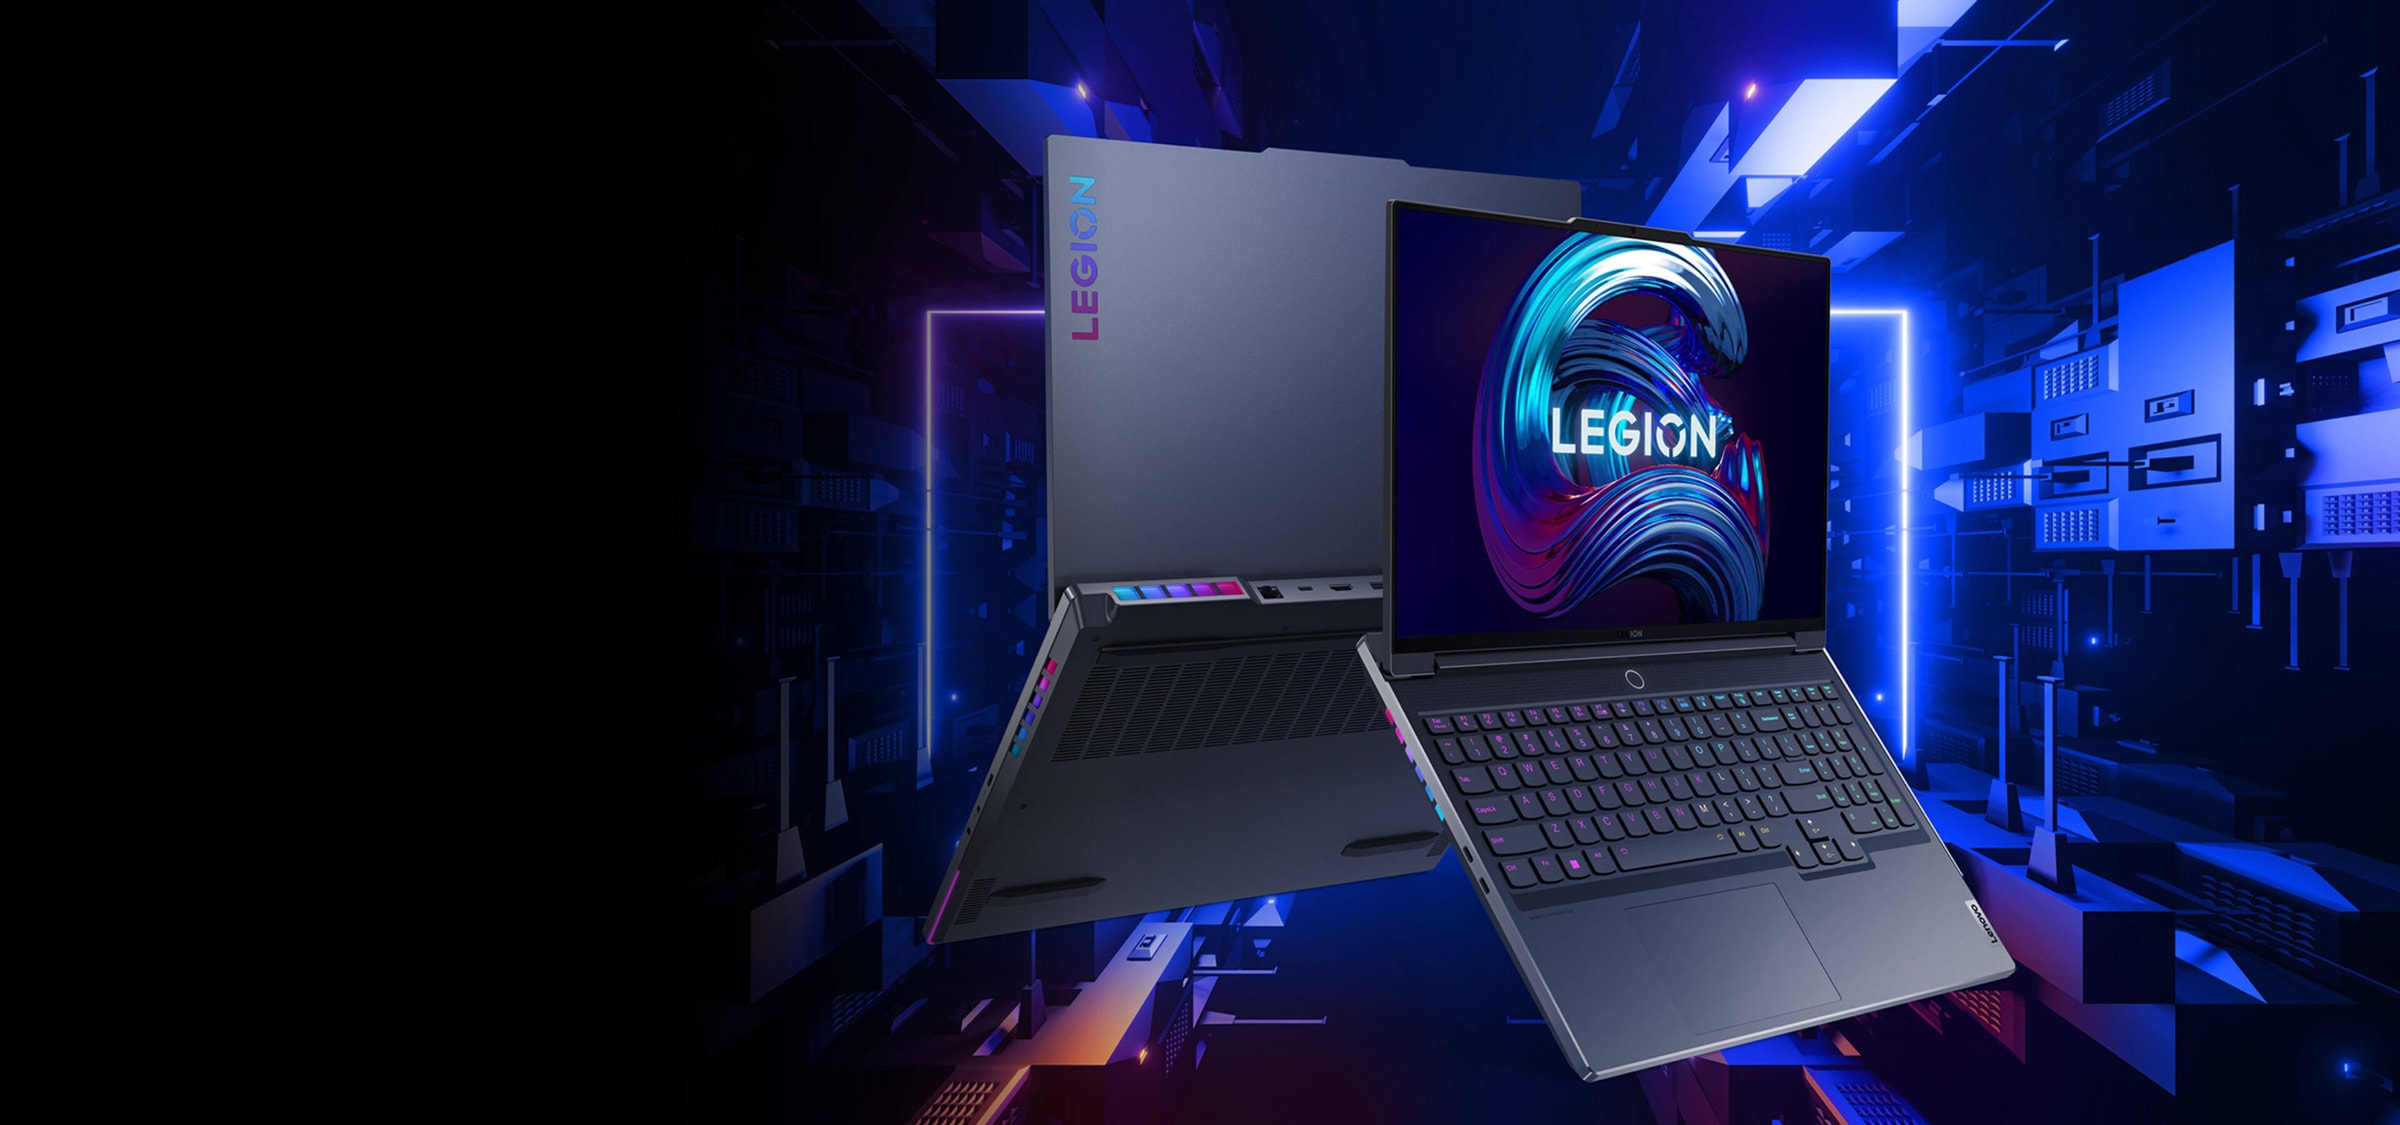 Bærbar Lenovo Legion 7-PC åpen 135 grader sett forfra, vippet forover fra basen, viser tastatur og skjerm og vinklet for å vise venstre sideporter og speilvendt visning av baksiden.